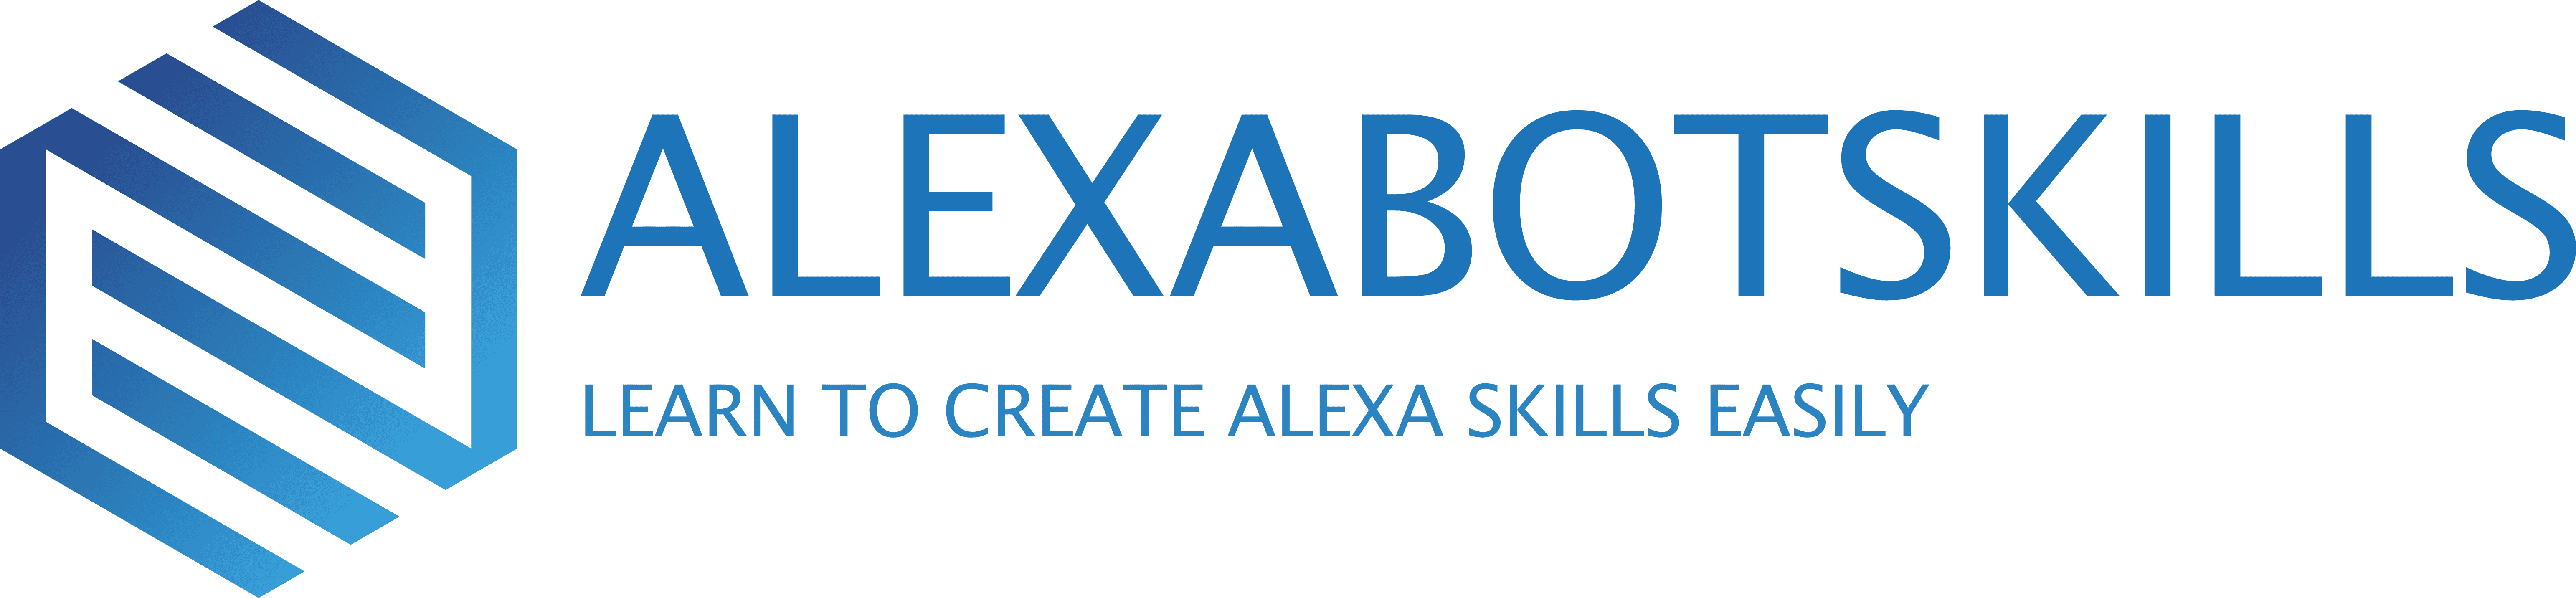 Alexabot Skills